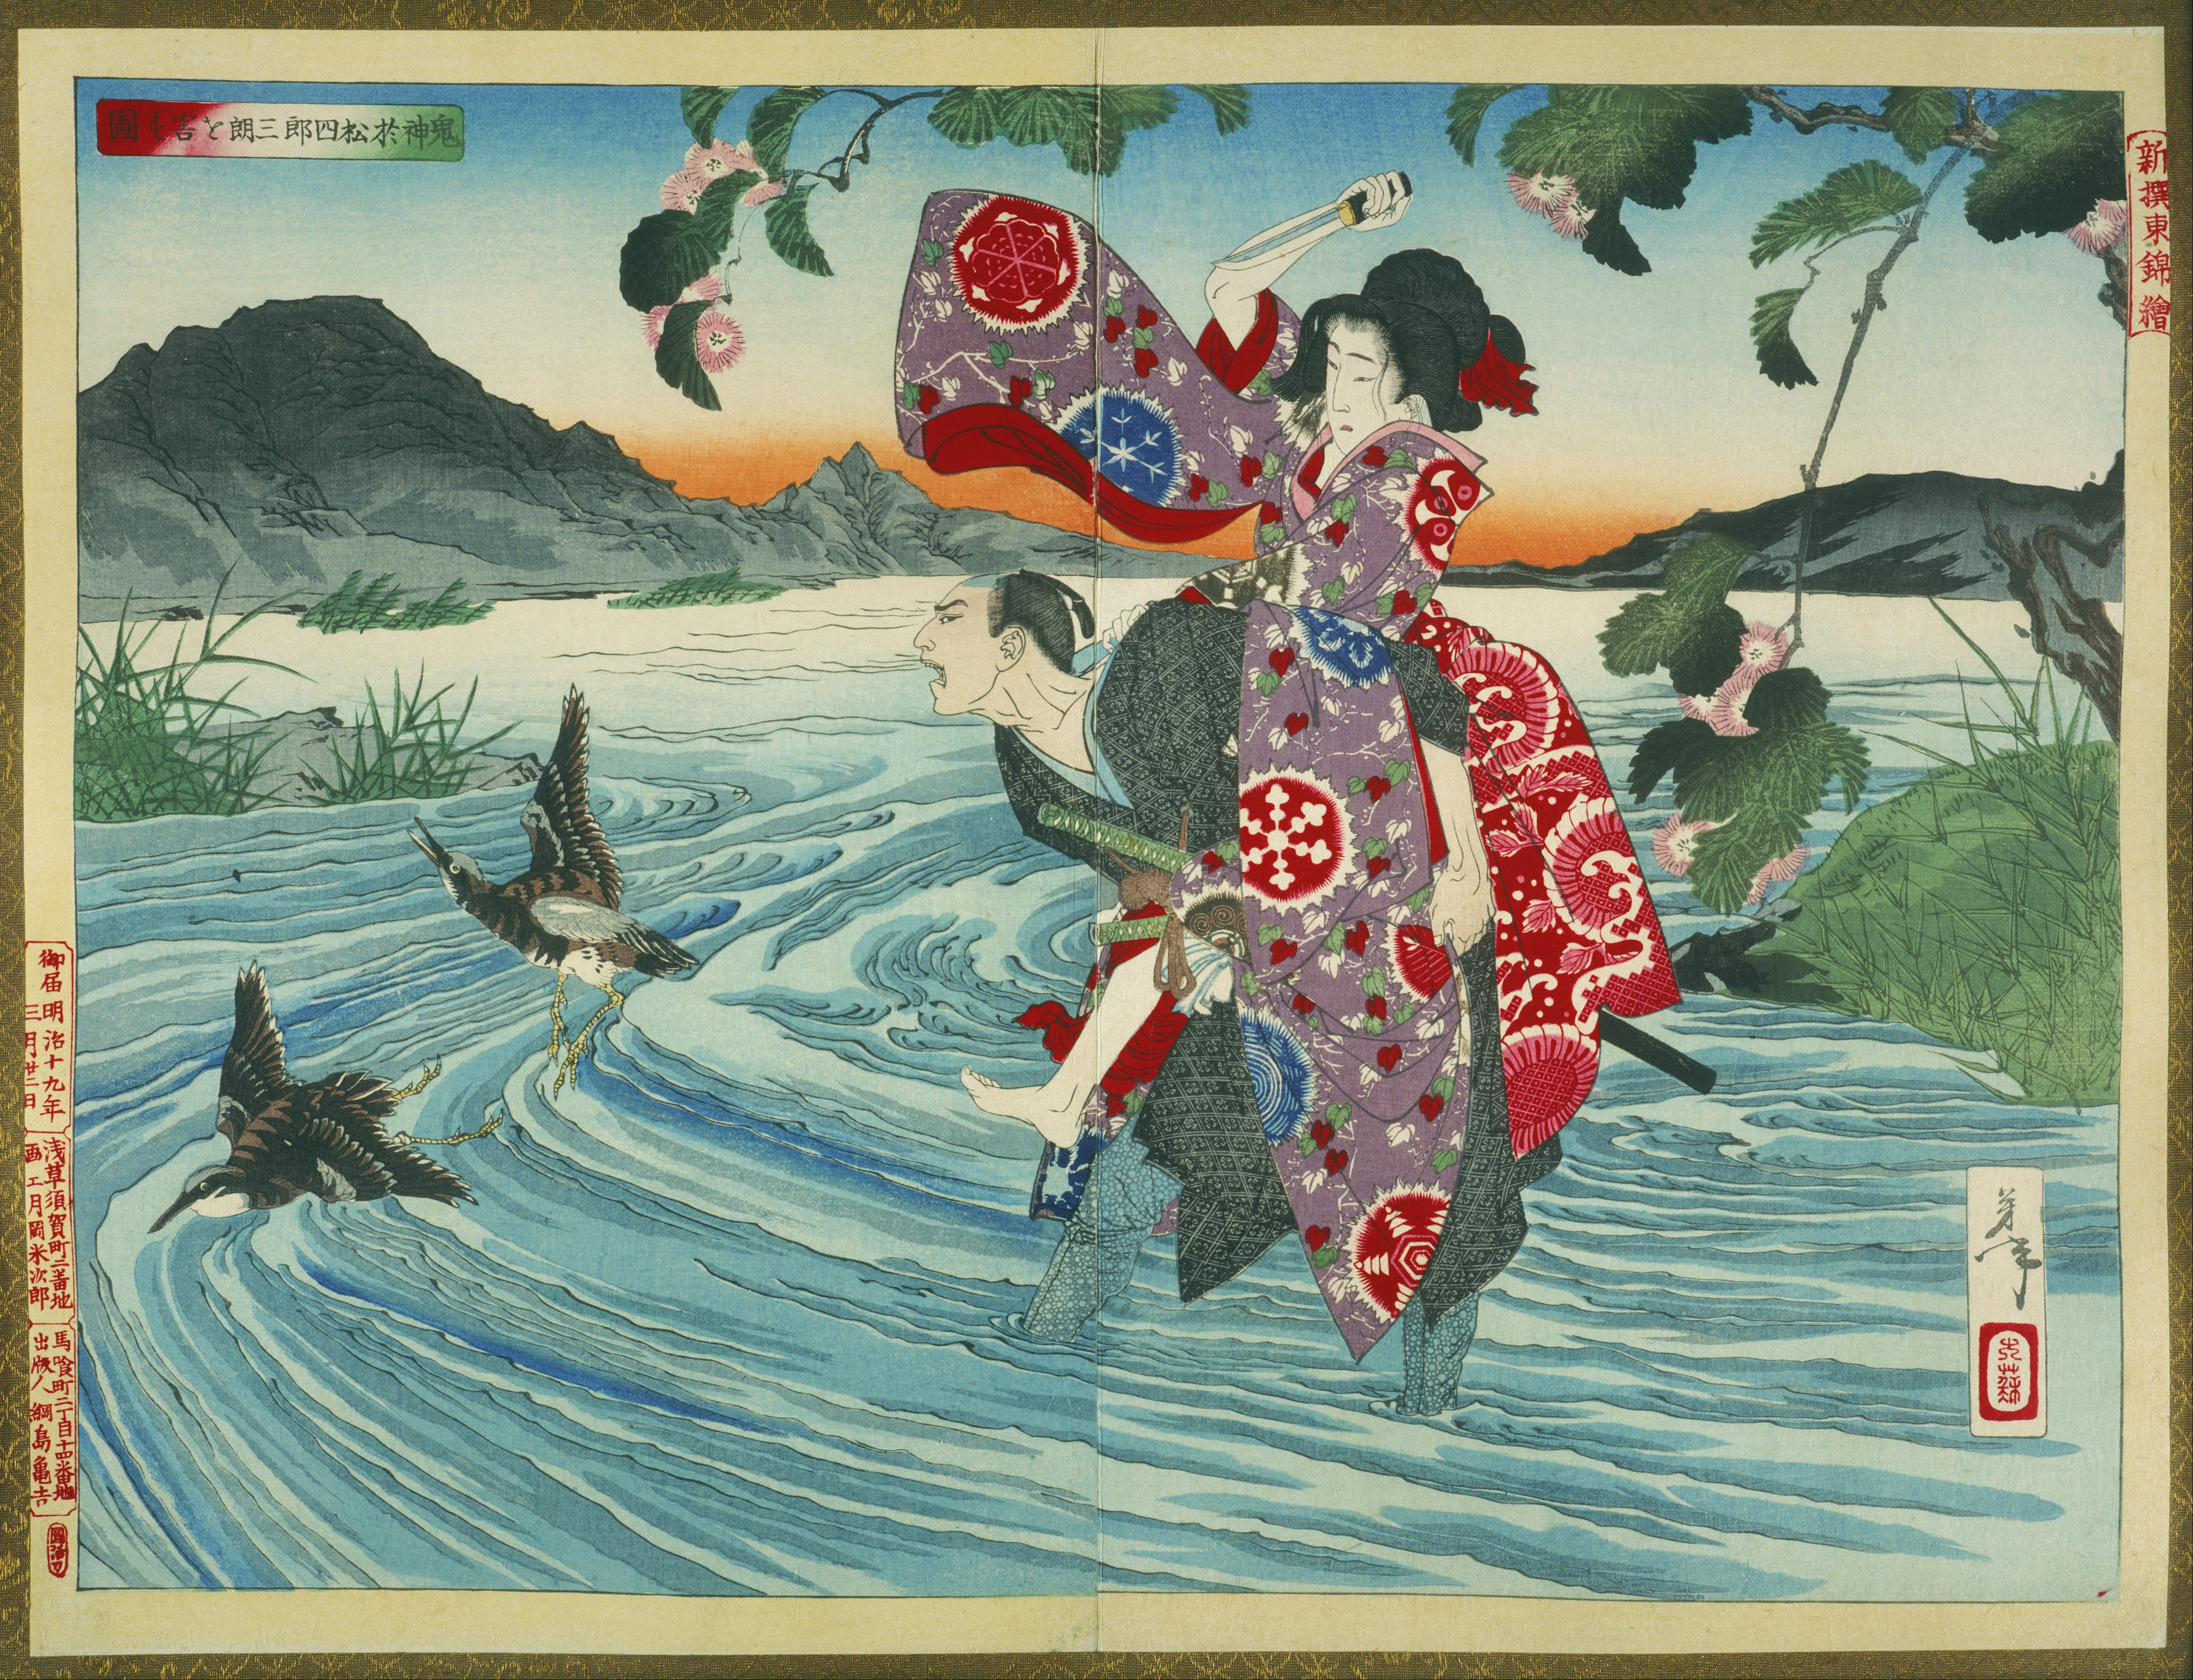 The Demon Omatsu Murders Shirosaburō in the Ford by Tsukioka Yoshitoshi - 1885 - 39.39 x 53.39 cm private collection